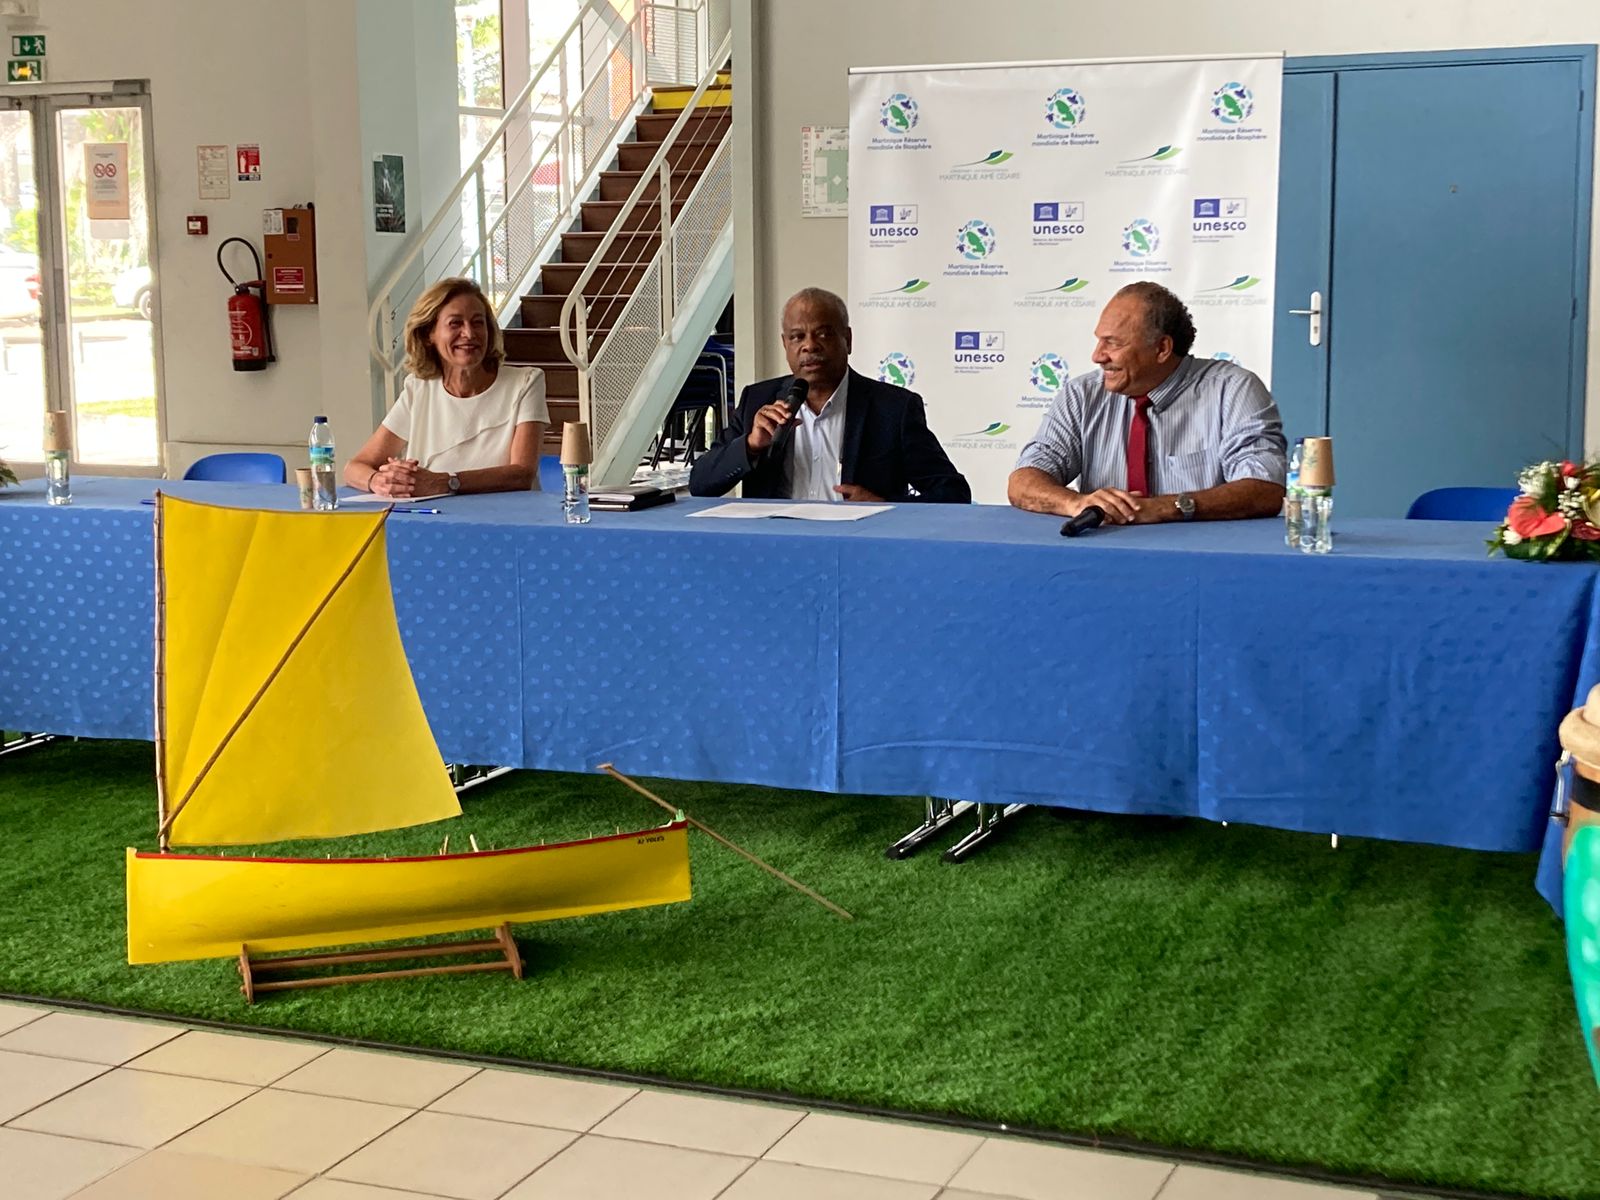     La Samac et l'association Martinique réserve de biosphère signent un partenariat

